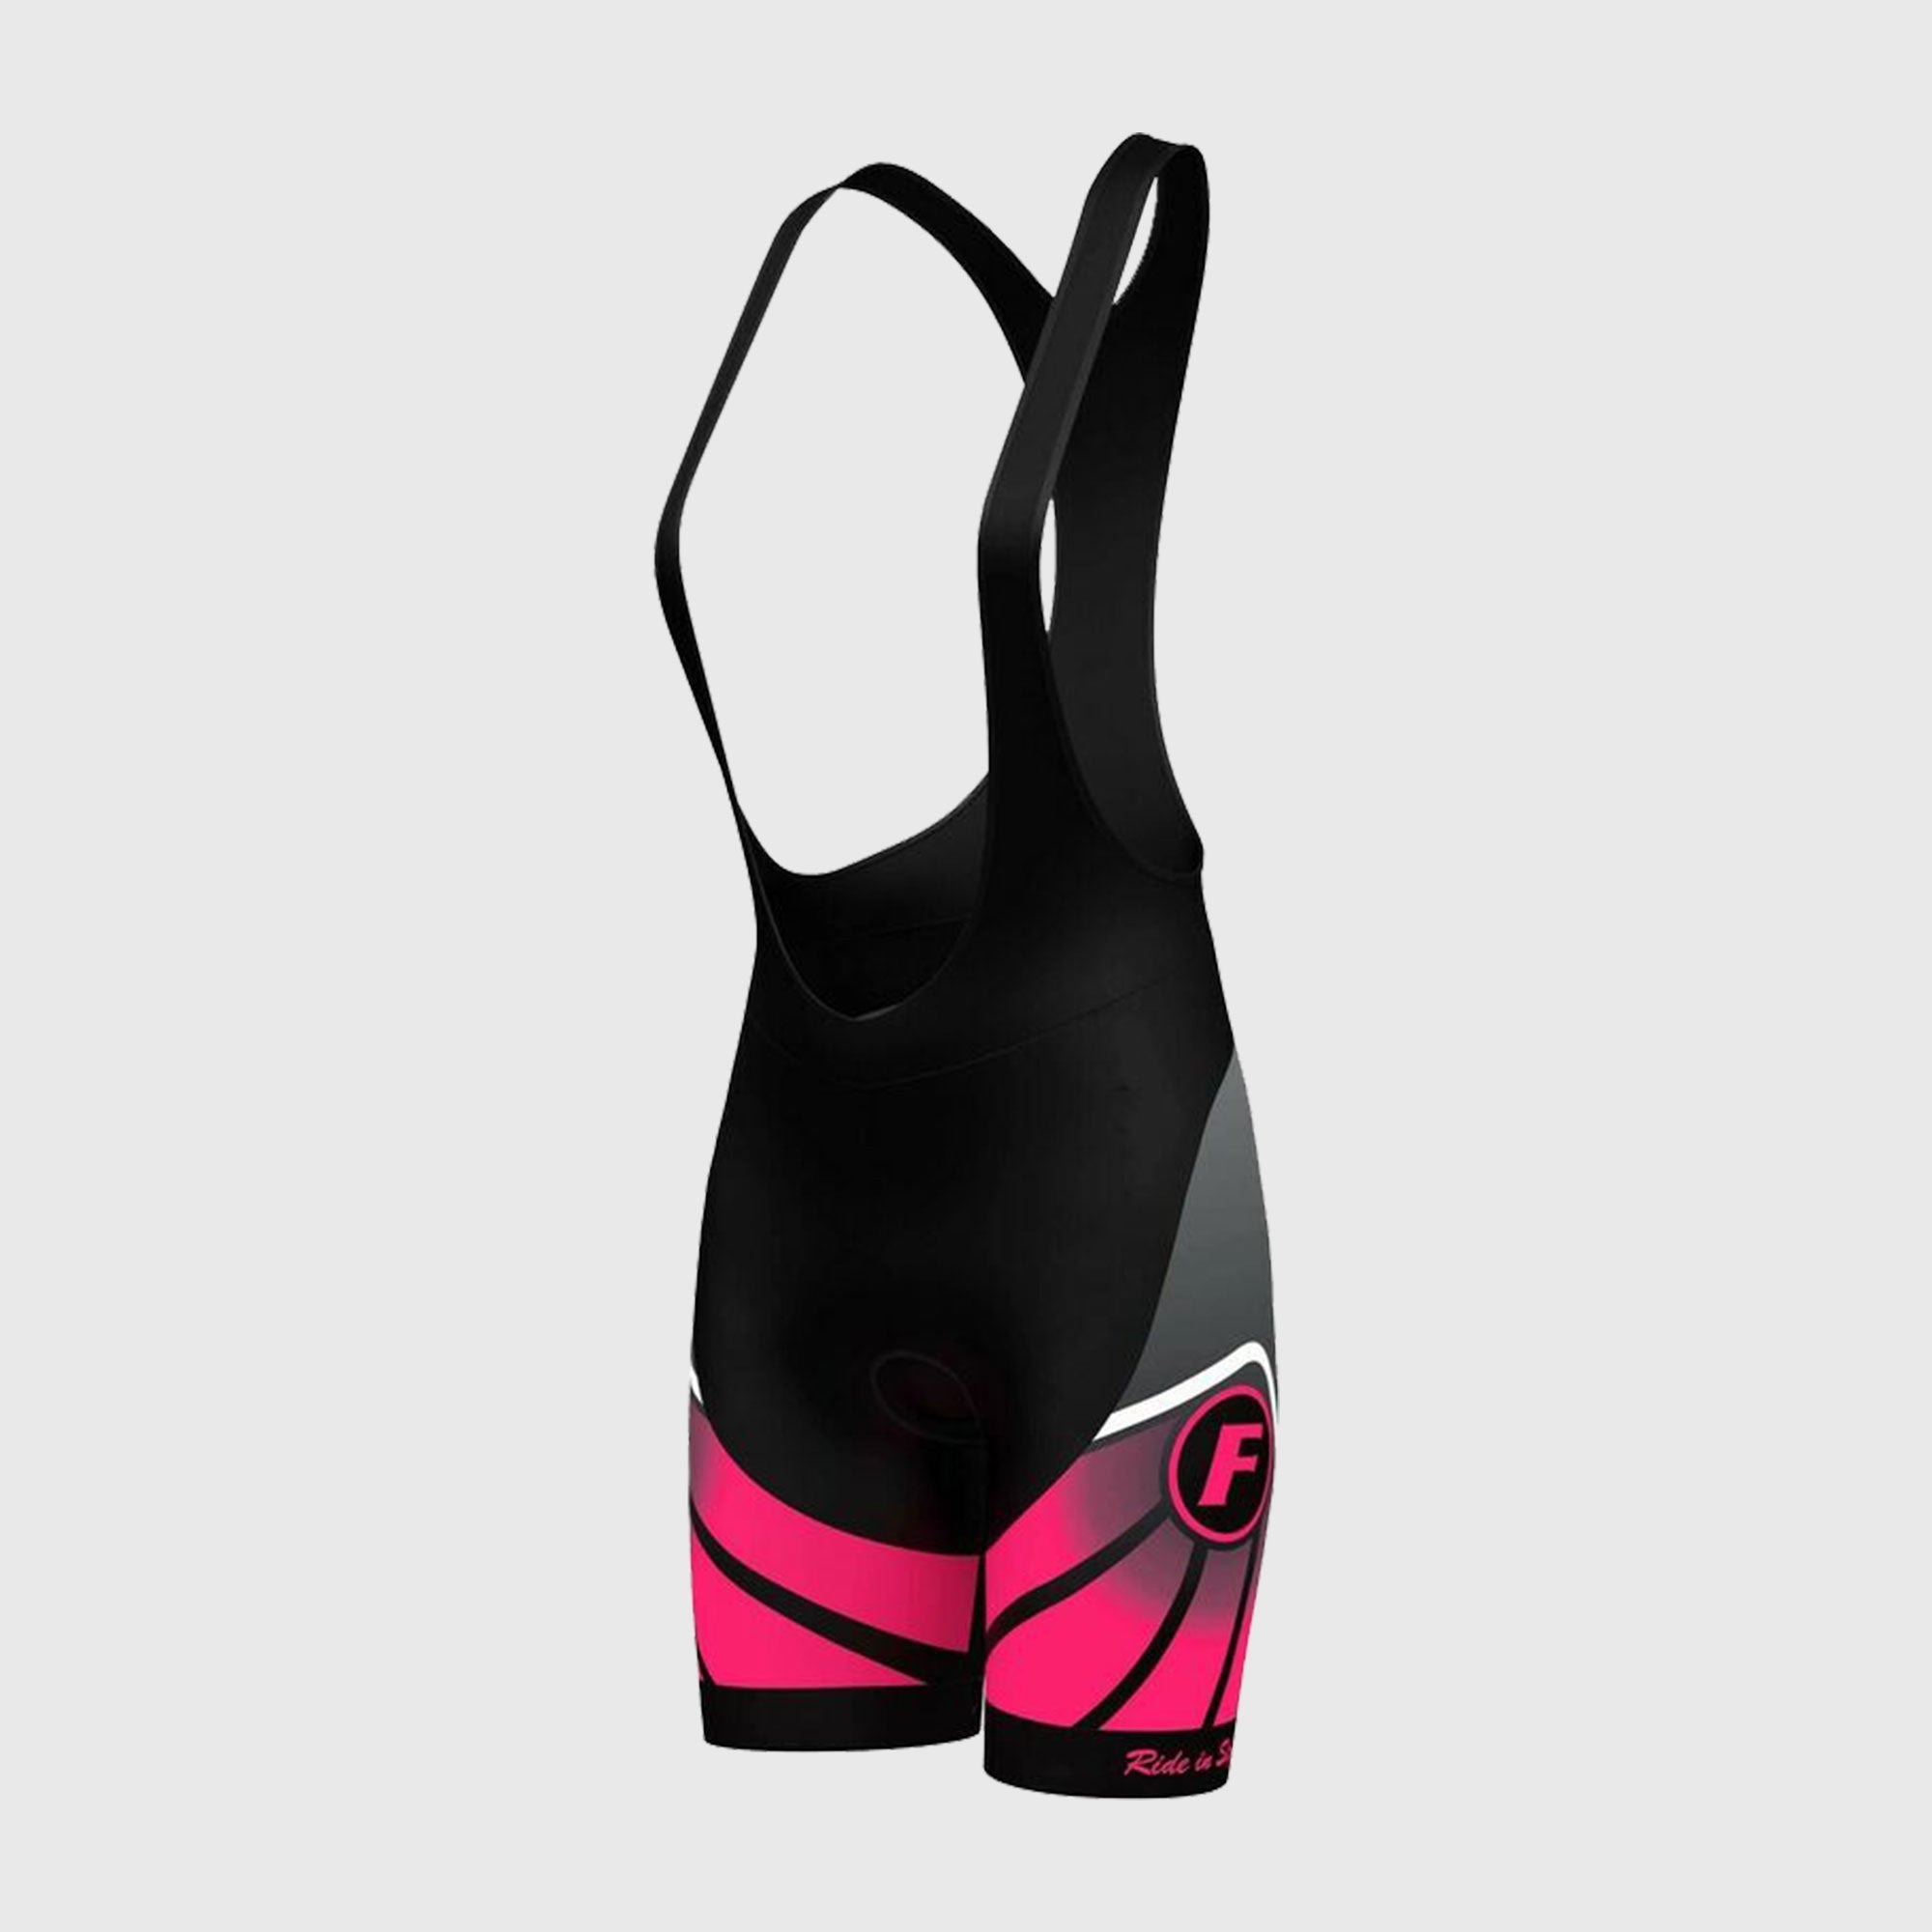 Fdx Signature Pink Women's Summer Cycling Padding Bib Shorts